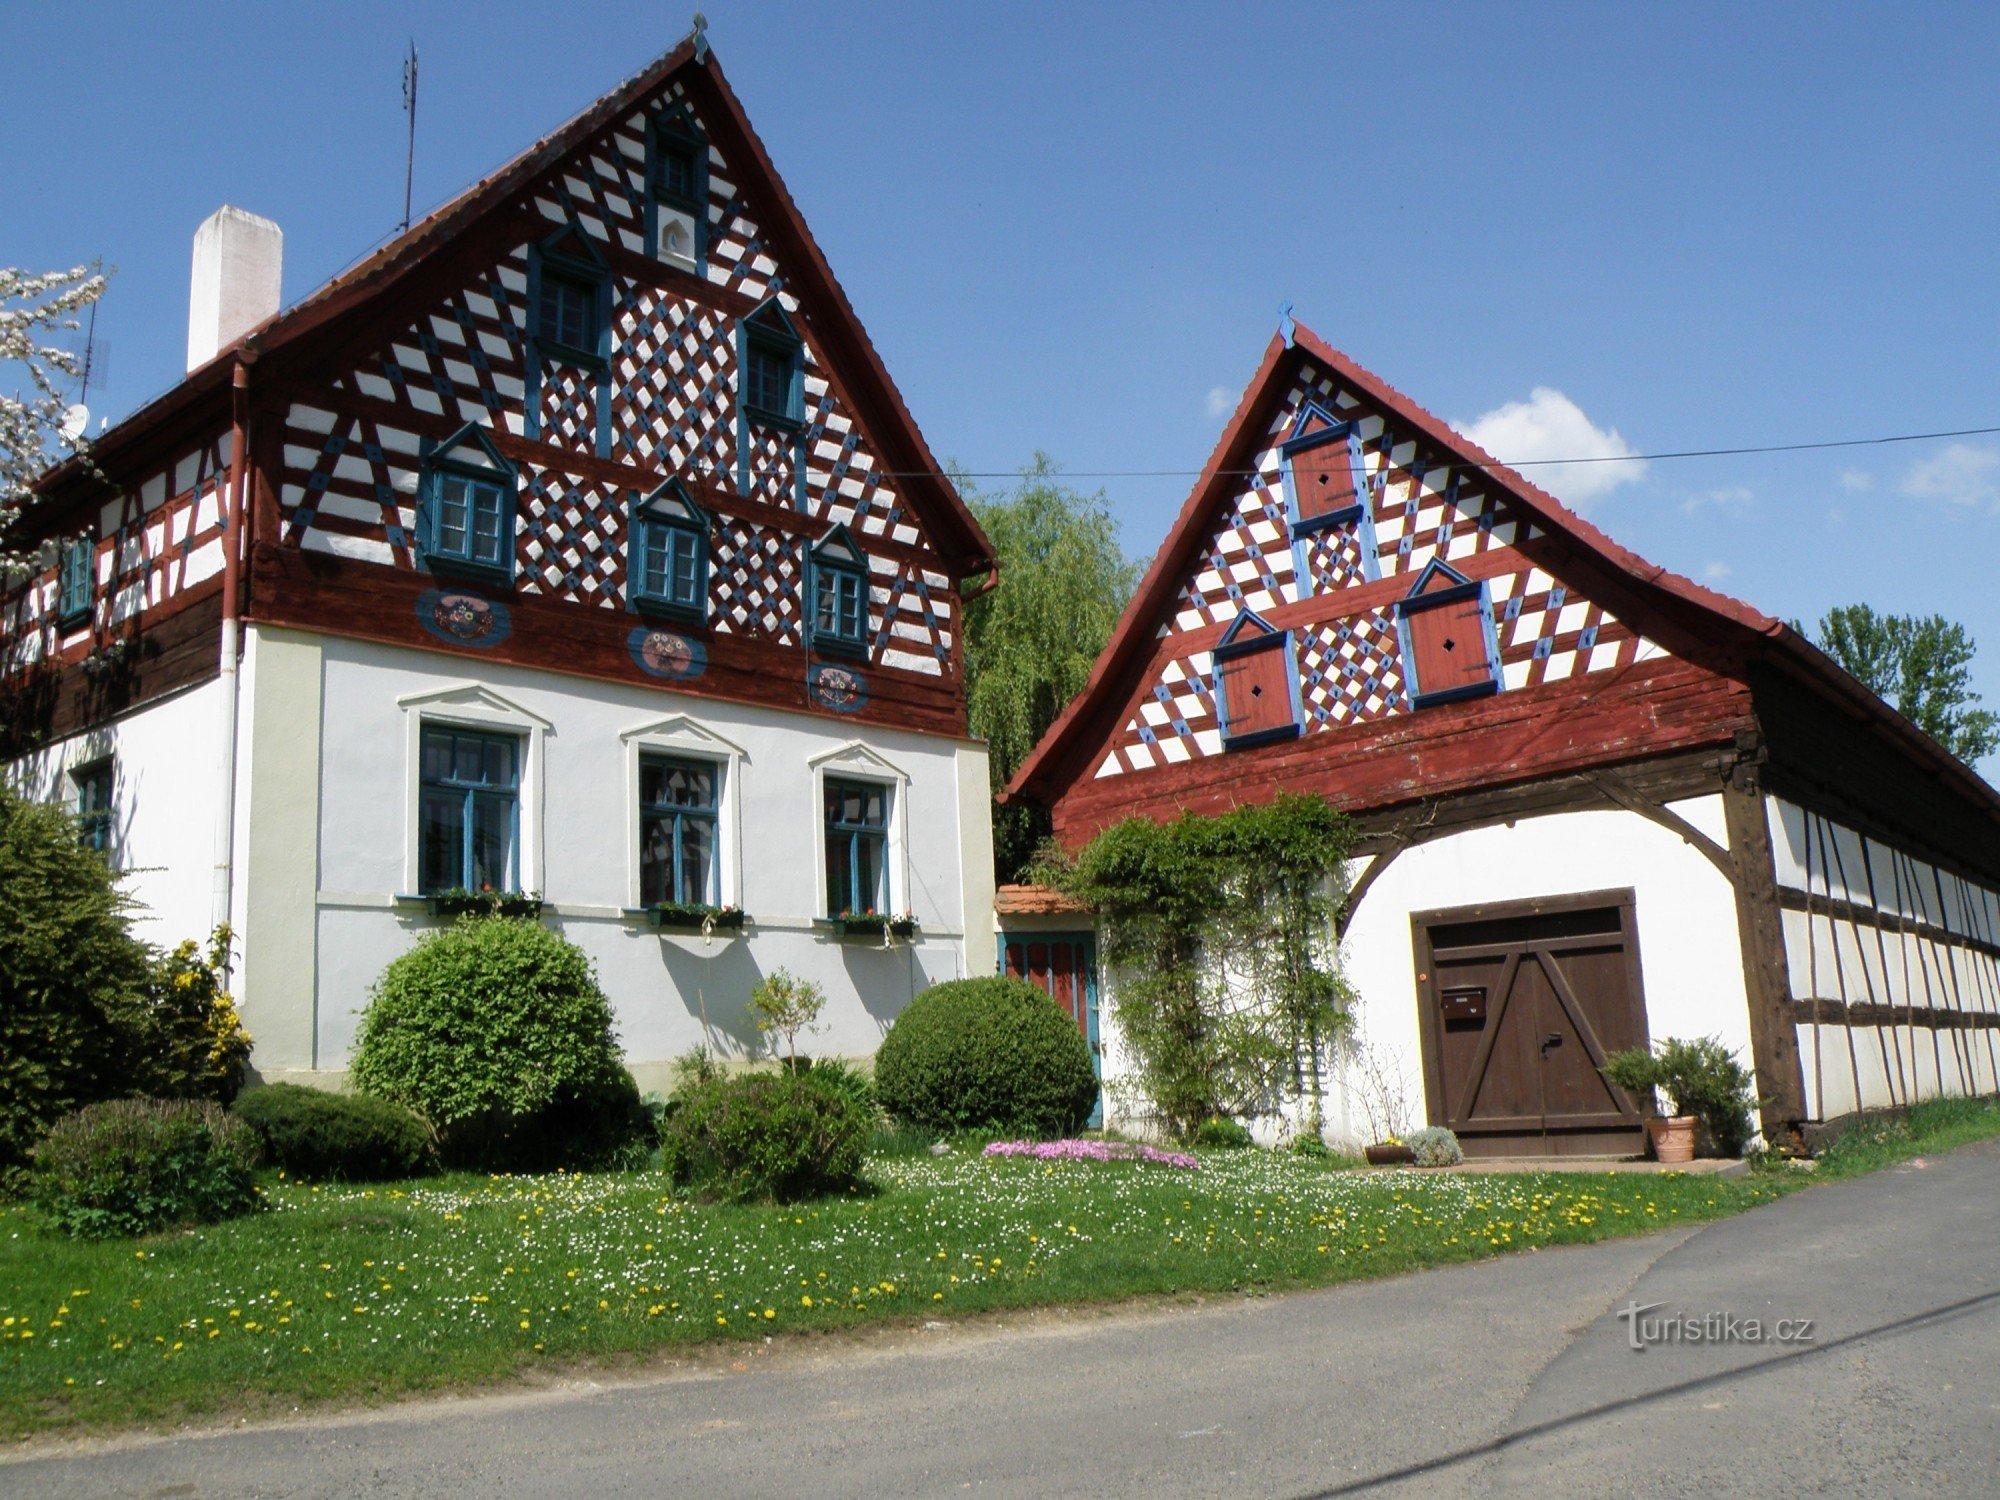 open-air museum Doubrava